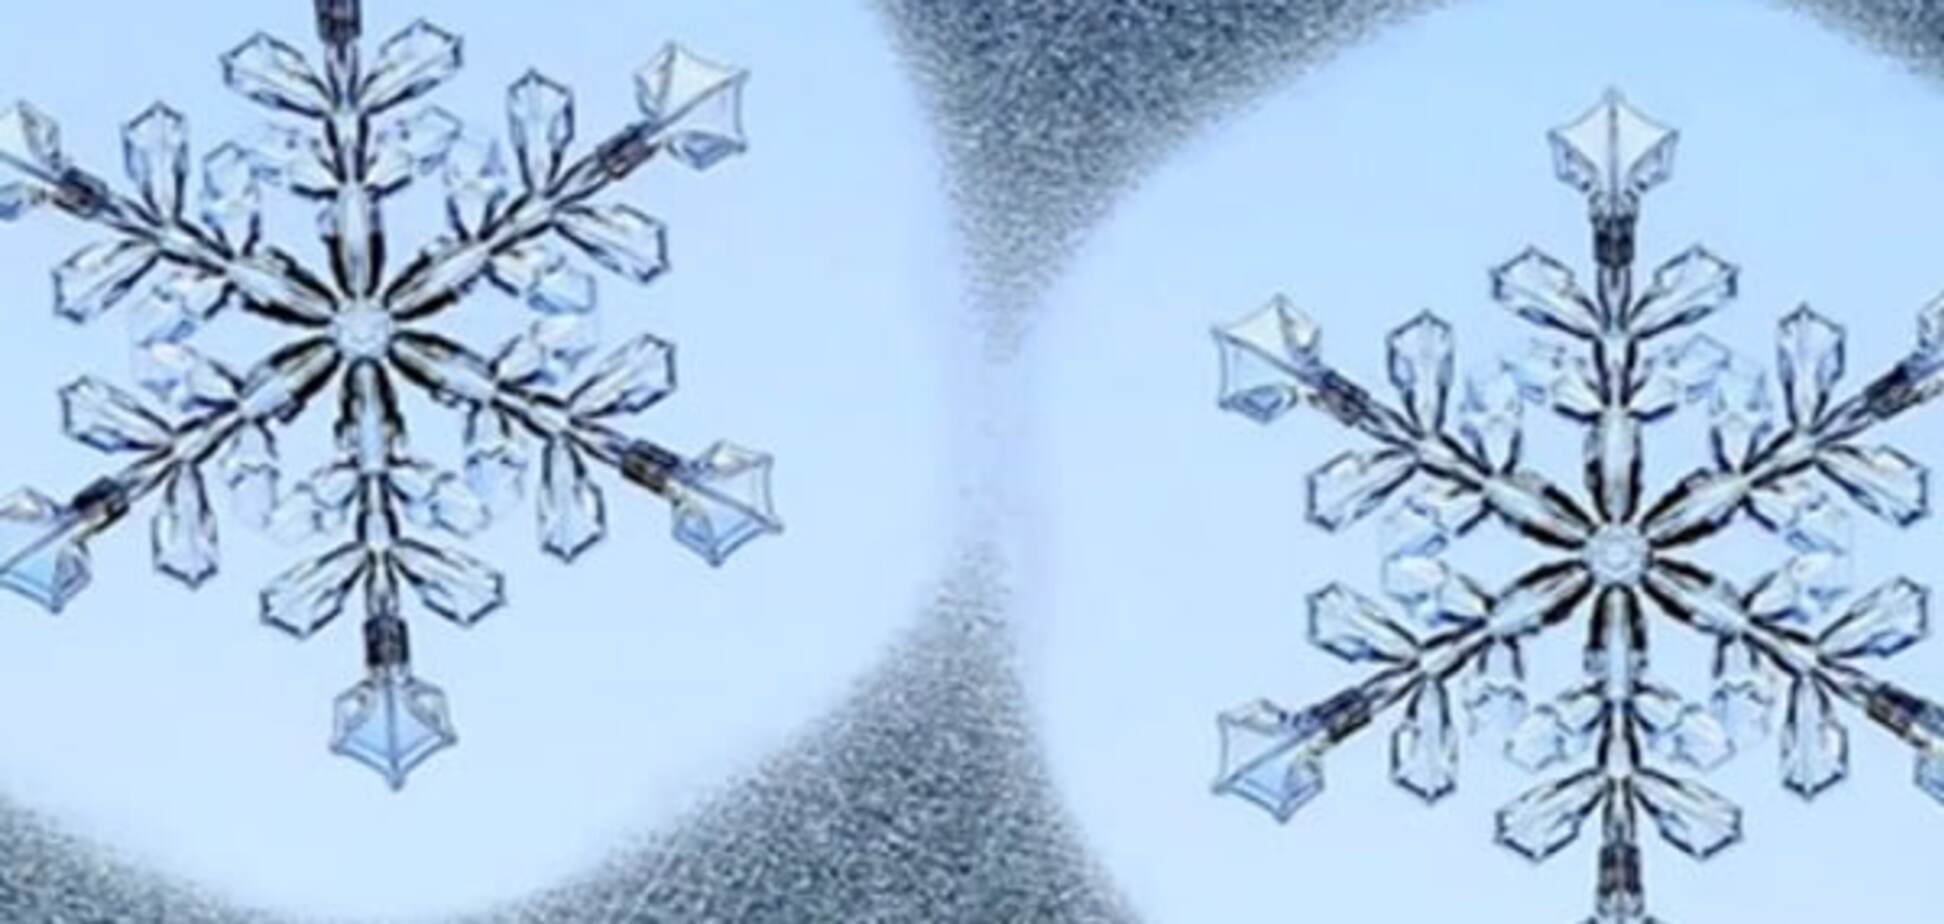 Ученые обманули природу и создали одинаковые снежинки: видеофакт